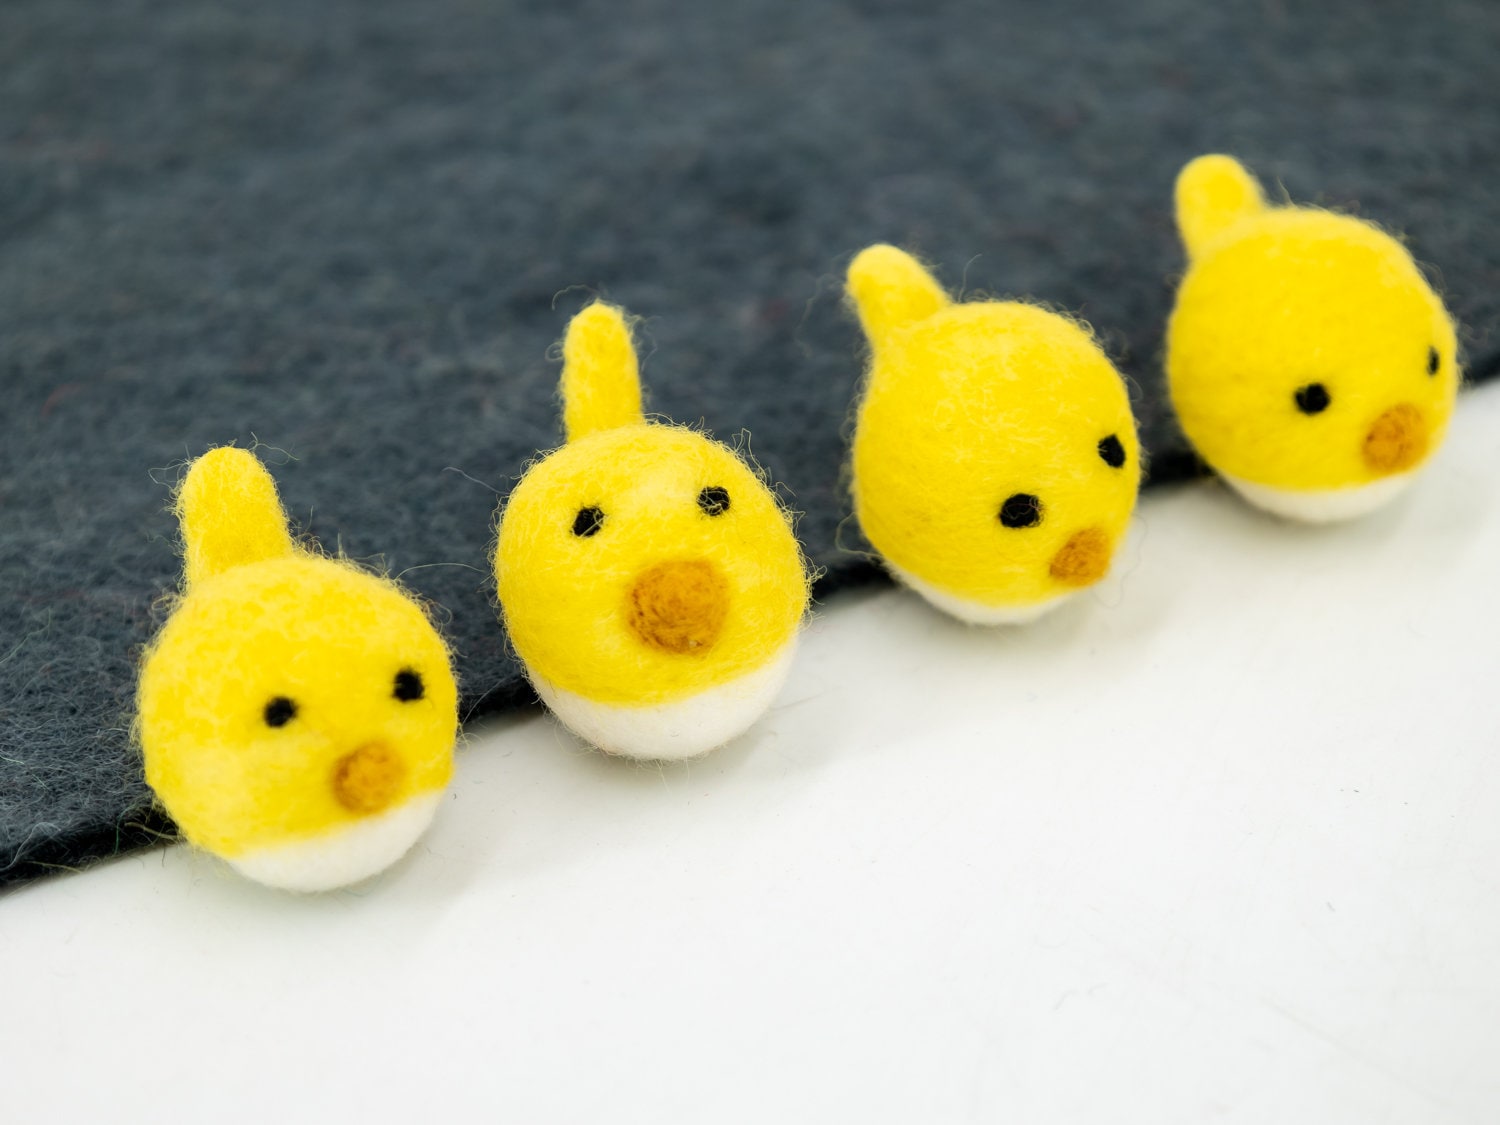 6cm Yellow Felt Chick - Felt & Yarn